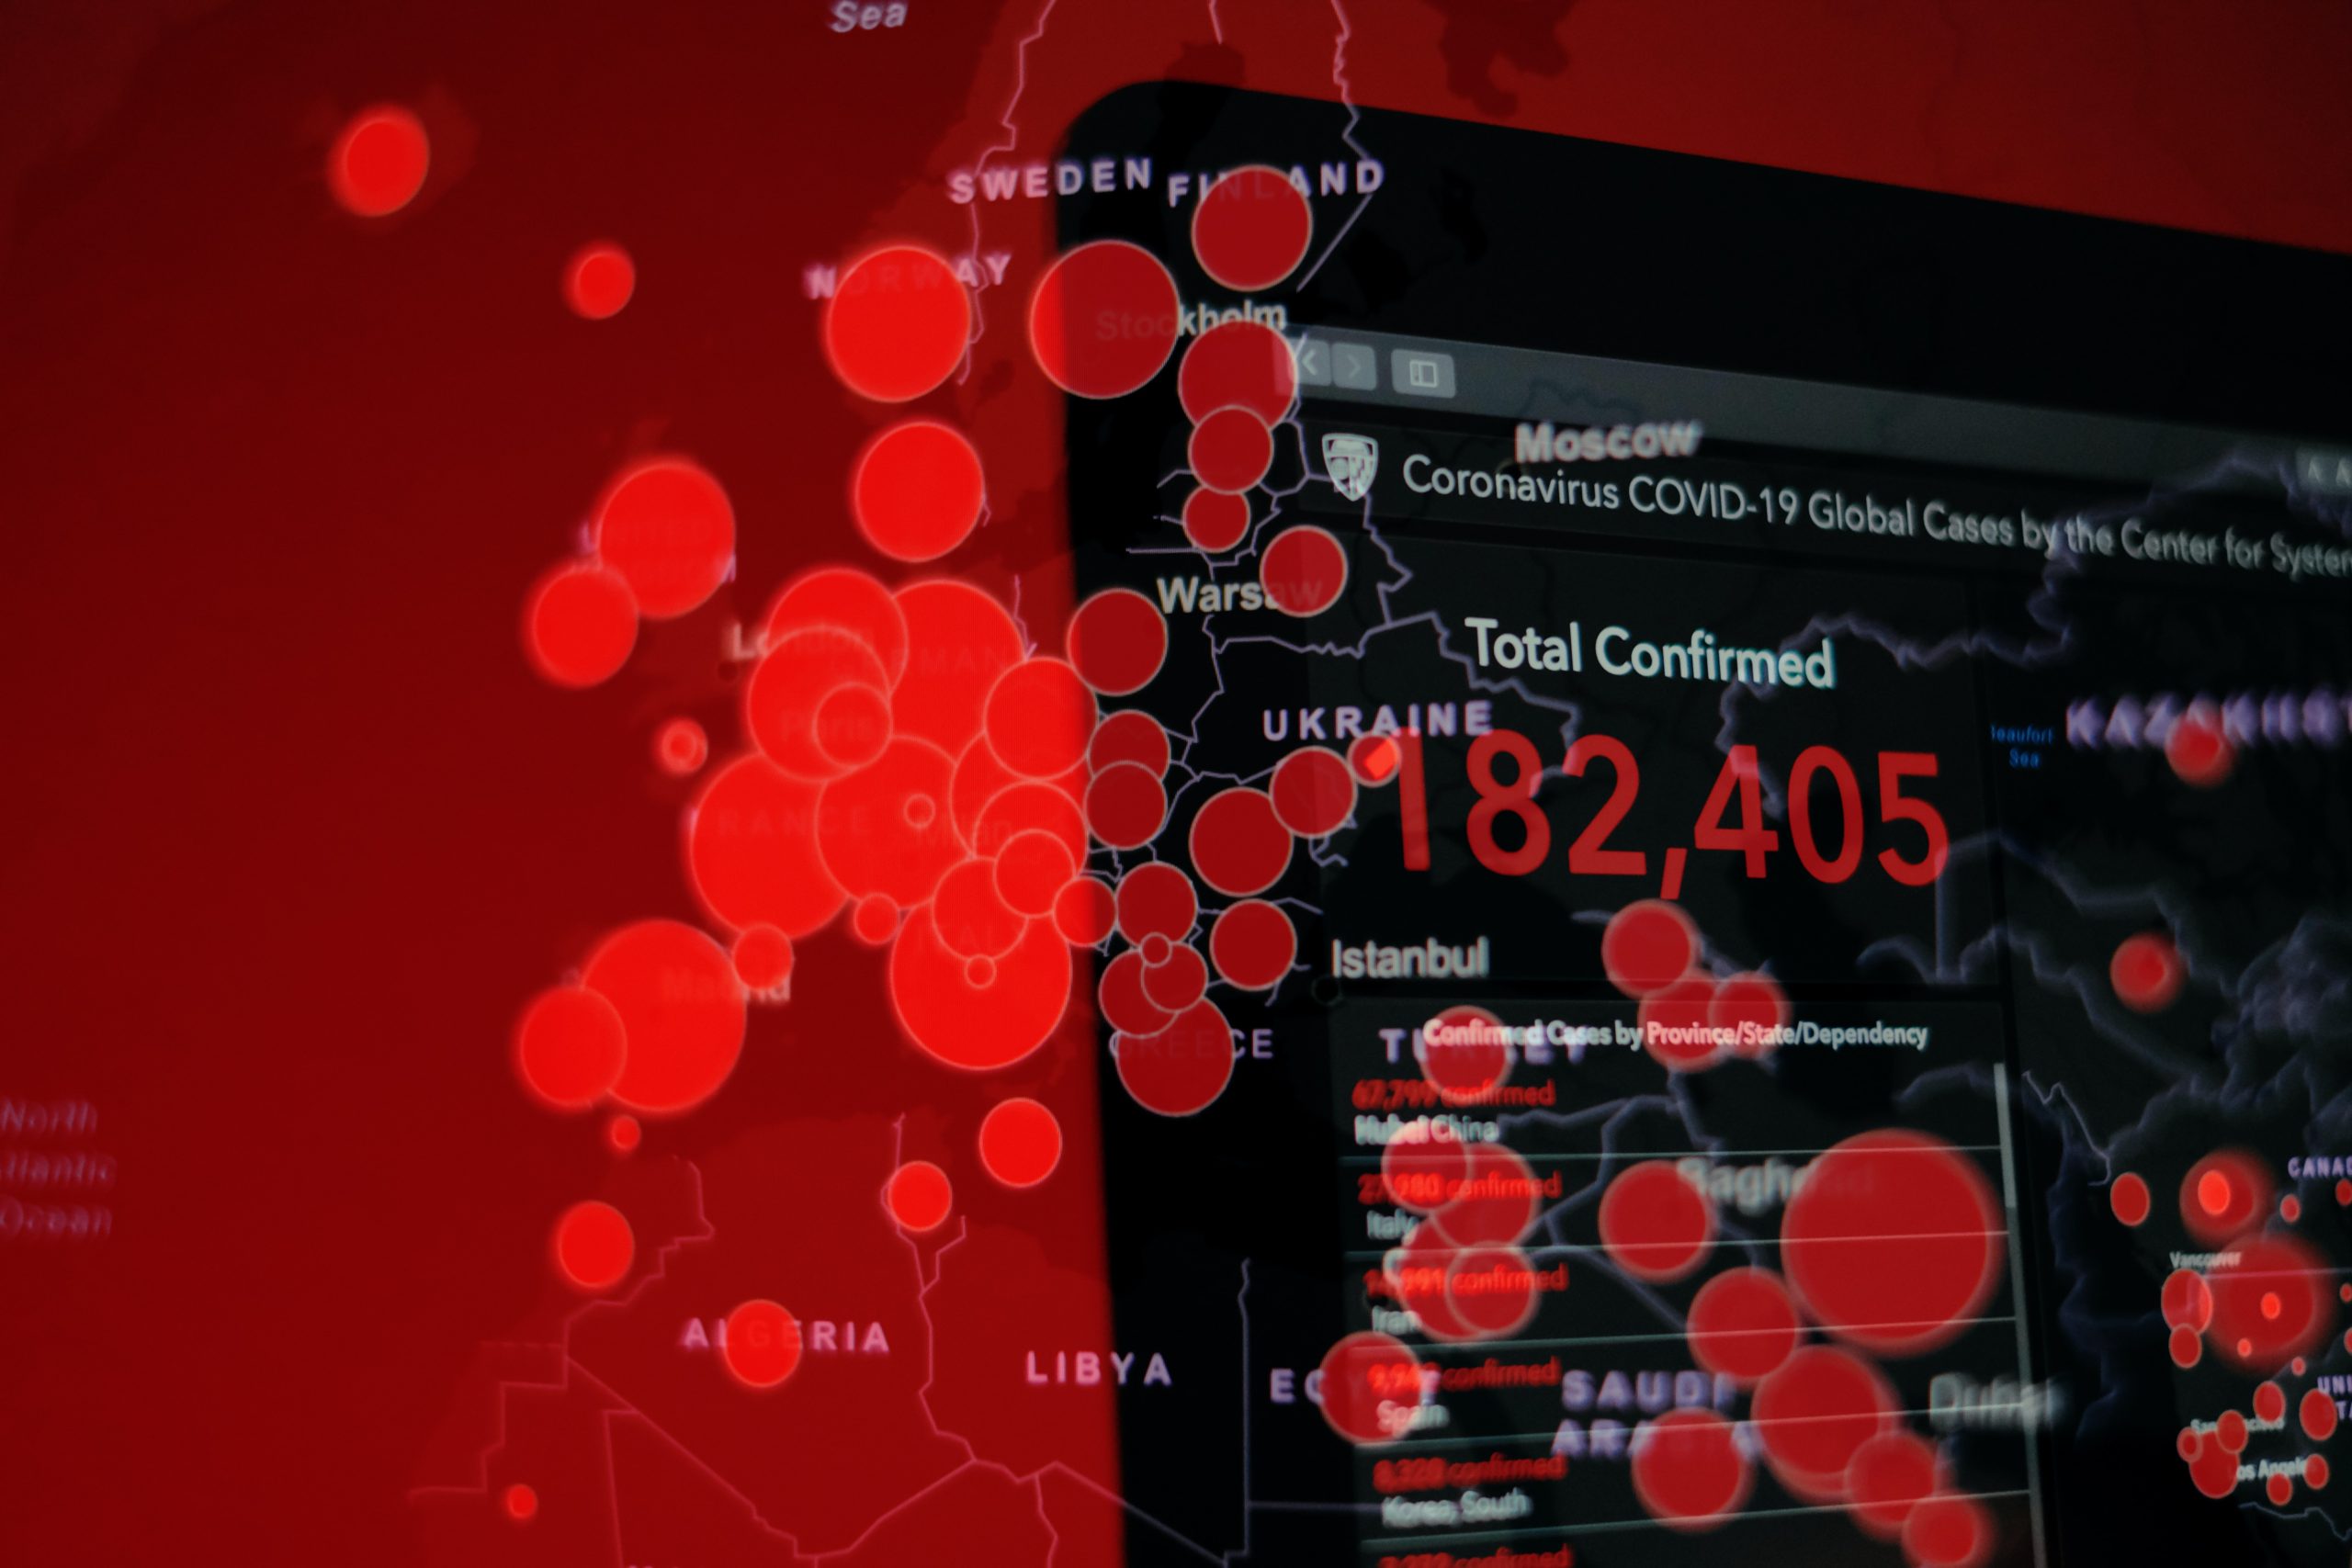 Fotografia em tons de vermelho e preto mostrando monitor de computador, que retrata focos de contágio relacionados à pandemia do COVID-19.